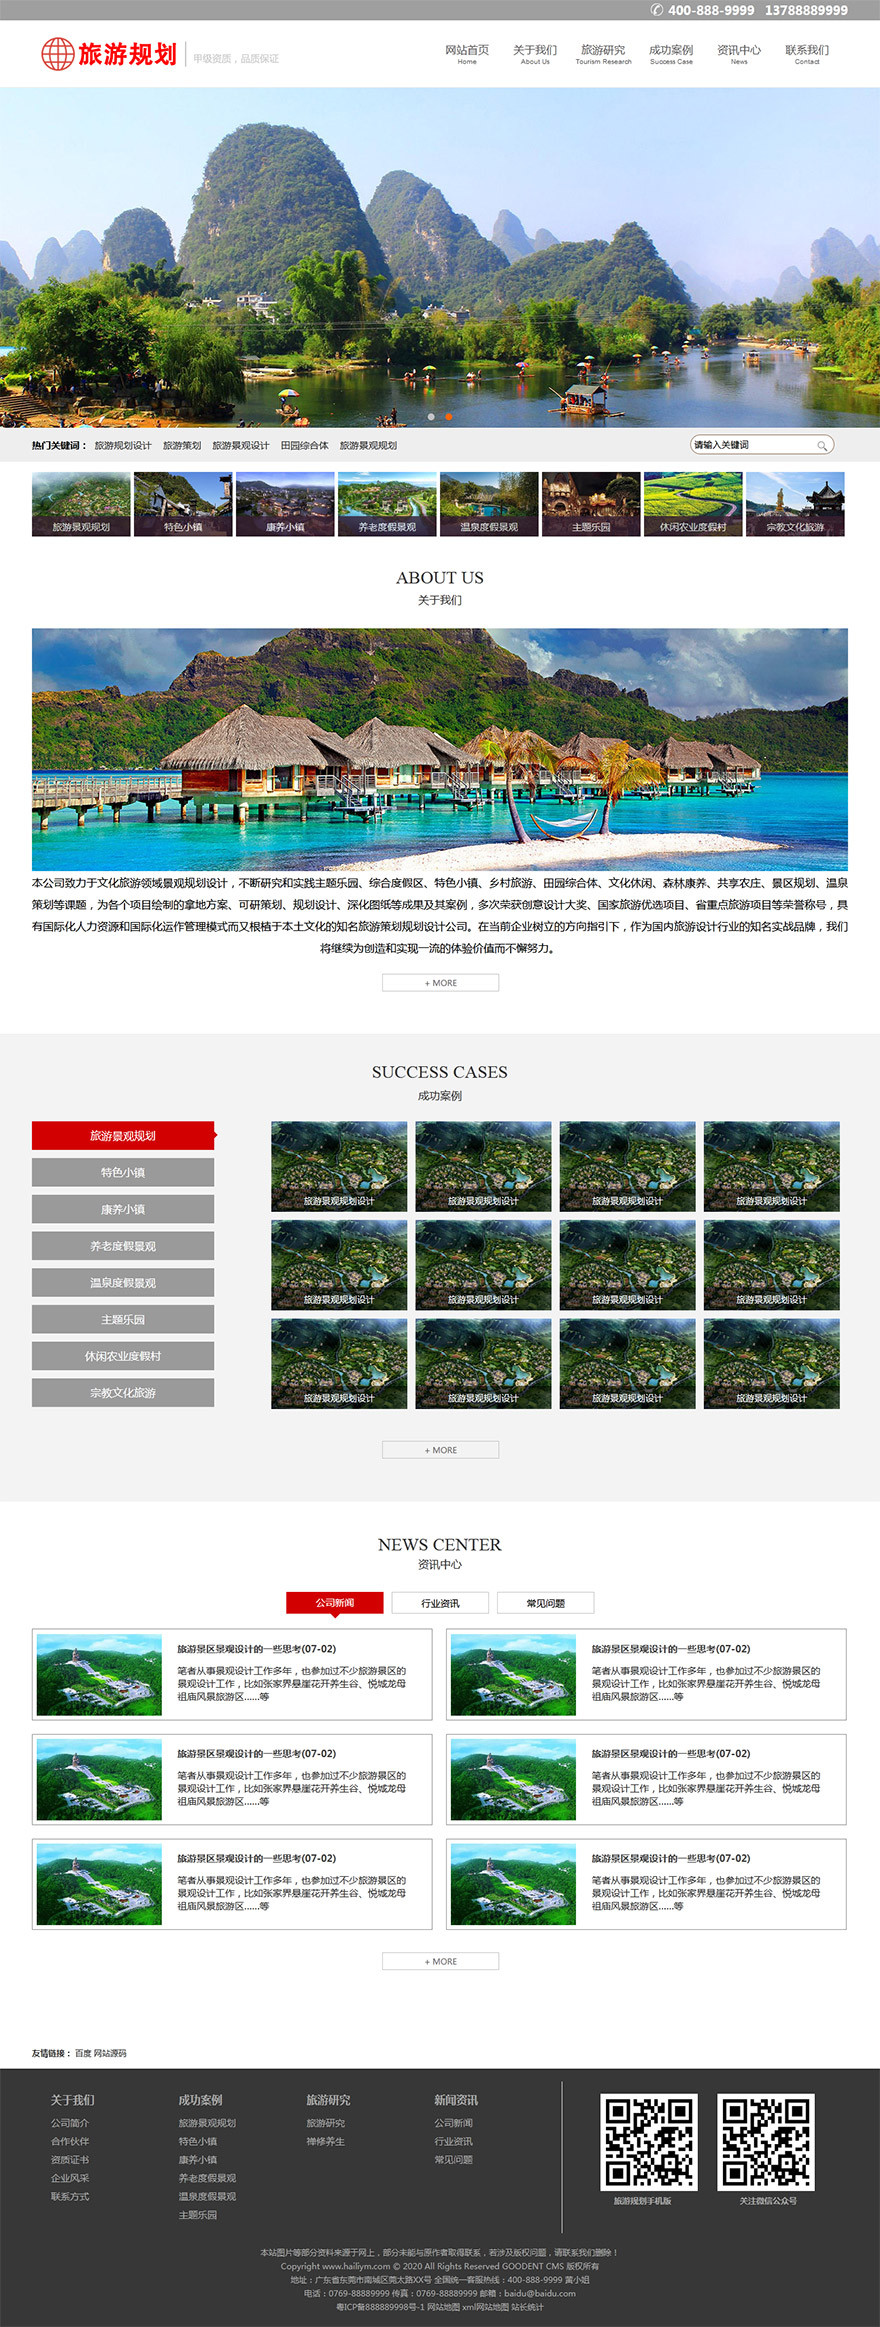 旅游景观规划设计公司网页模板源码